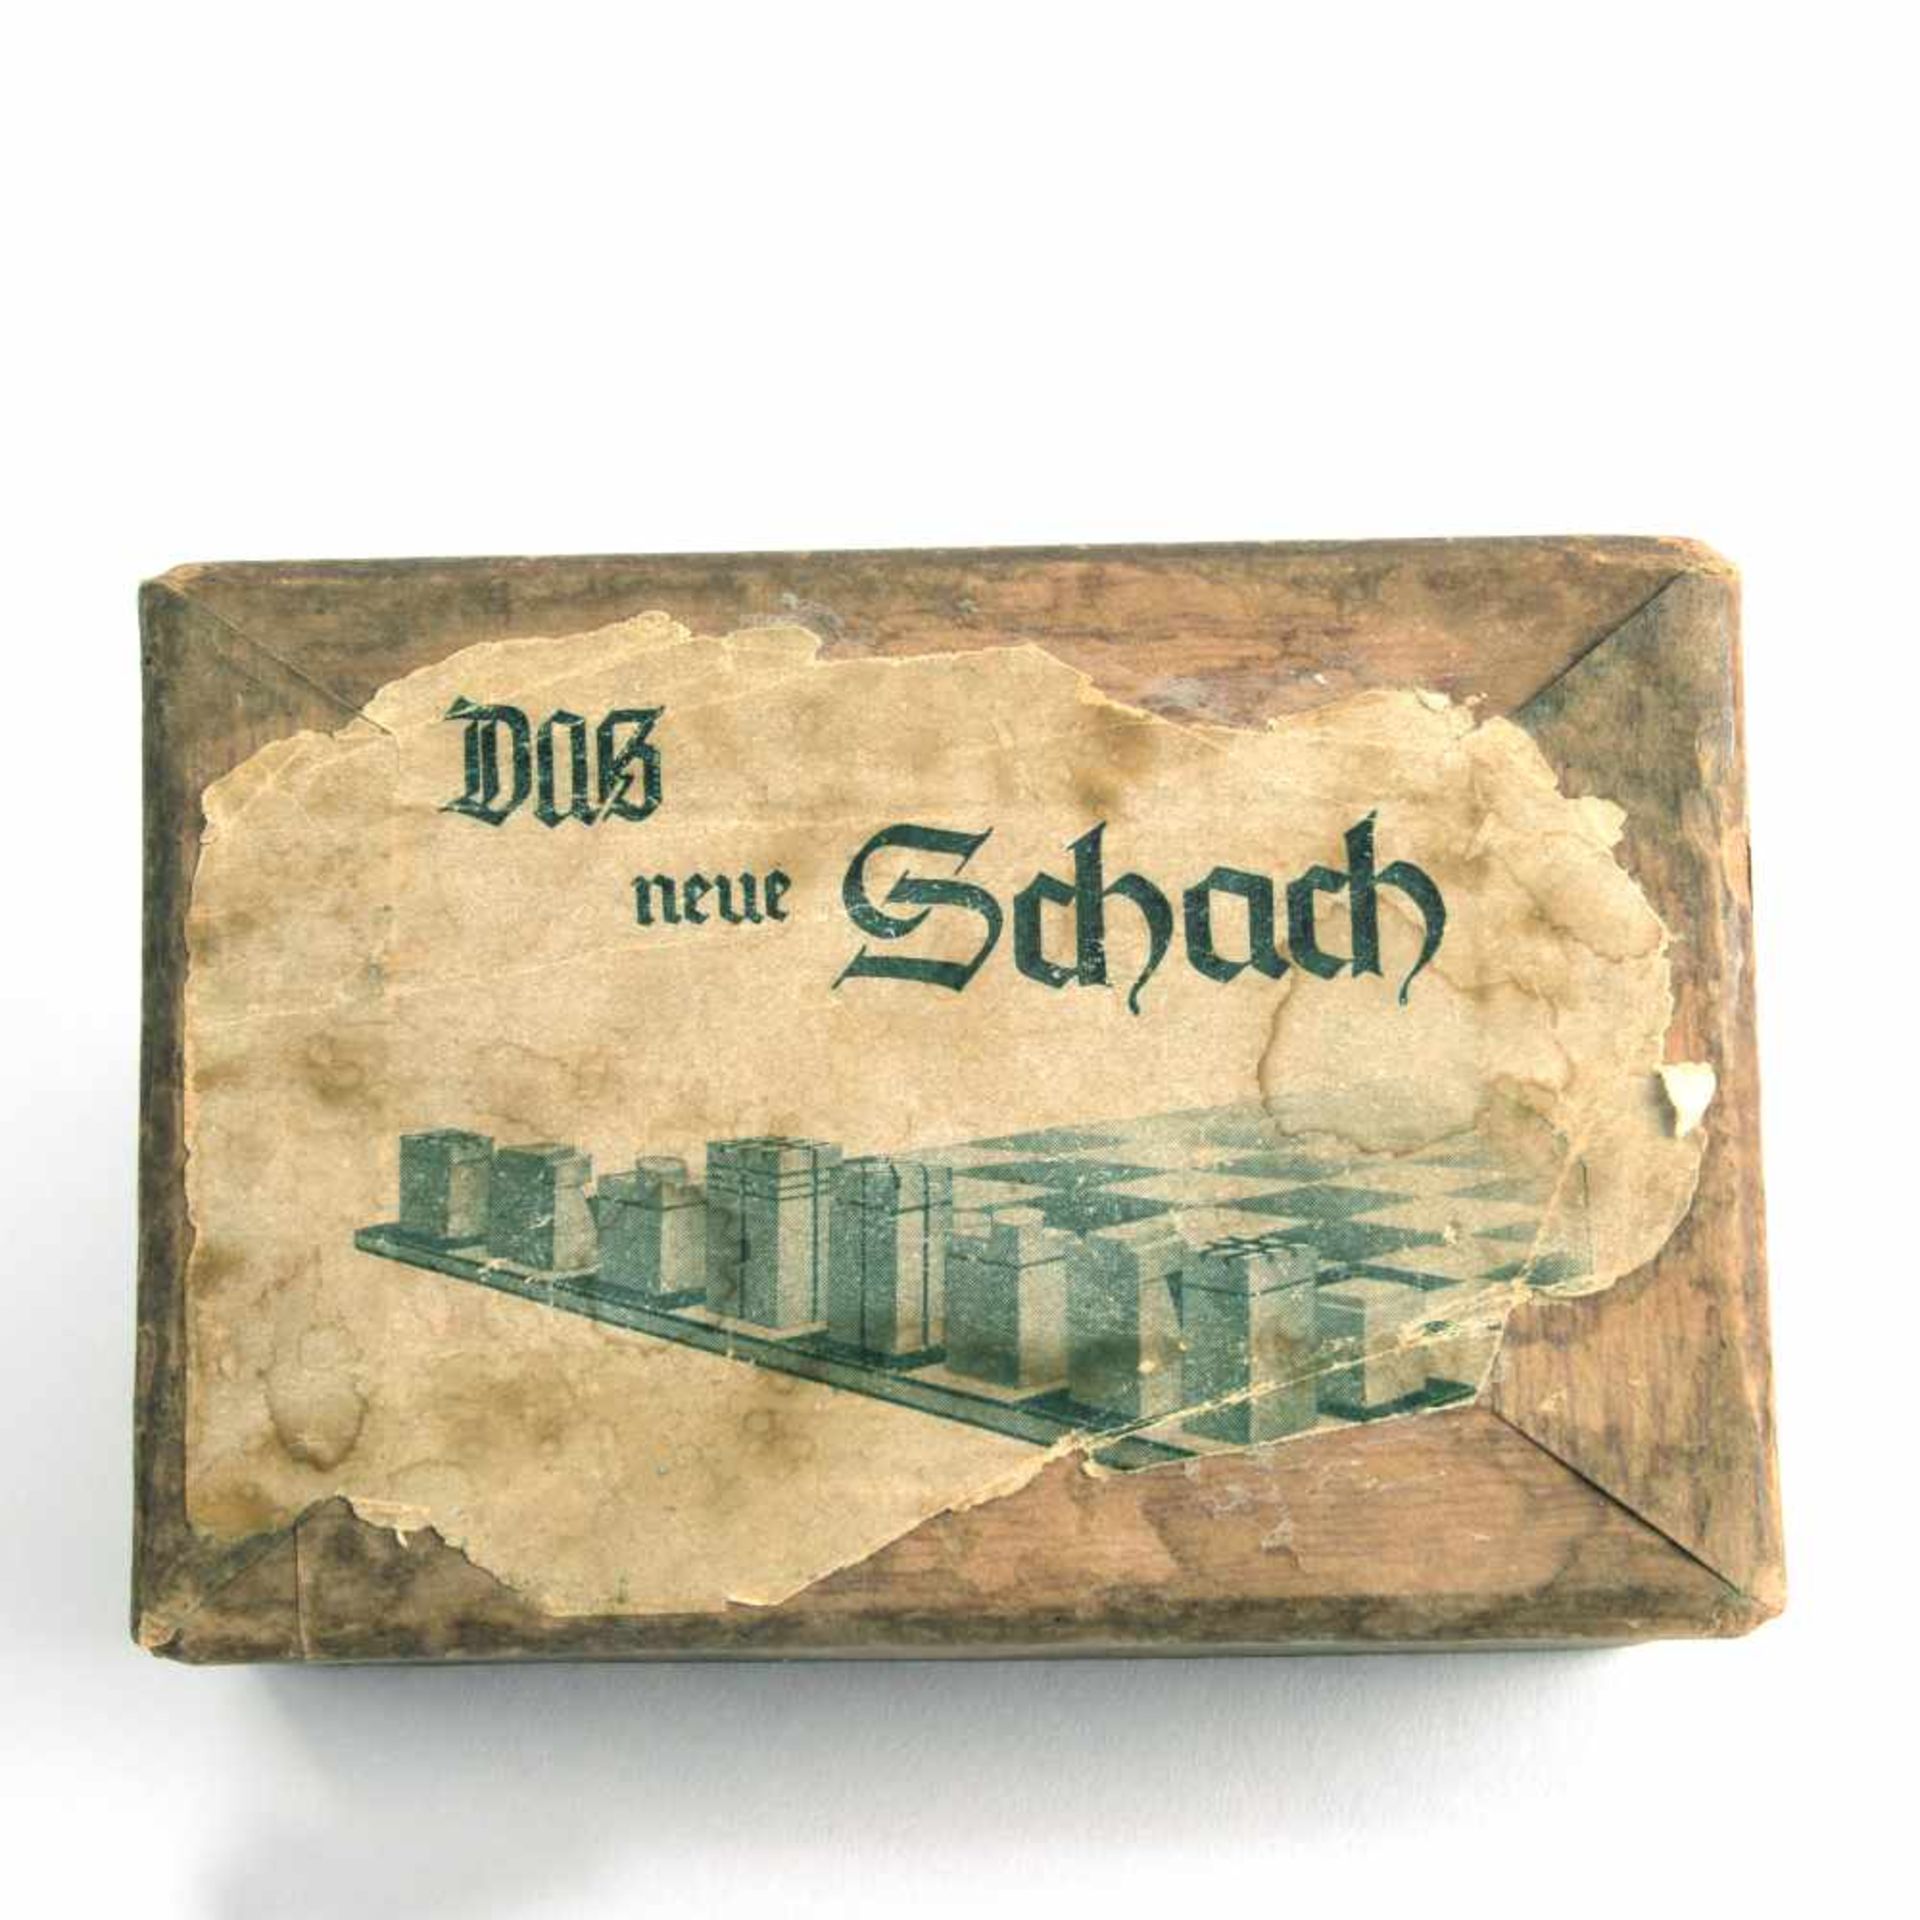 Deutschland. Schachspiel 'Das neue Schach', um 1925 H. 2,5-5,4 cm. Holz, natur bzw. schwarz gebeizt. - Image 5 of 9